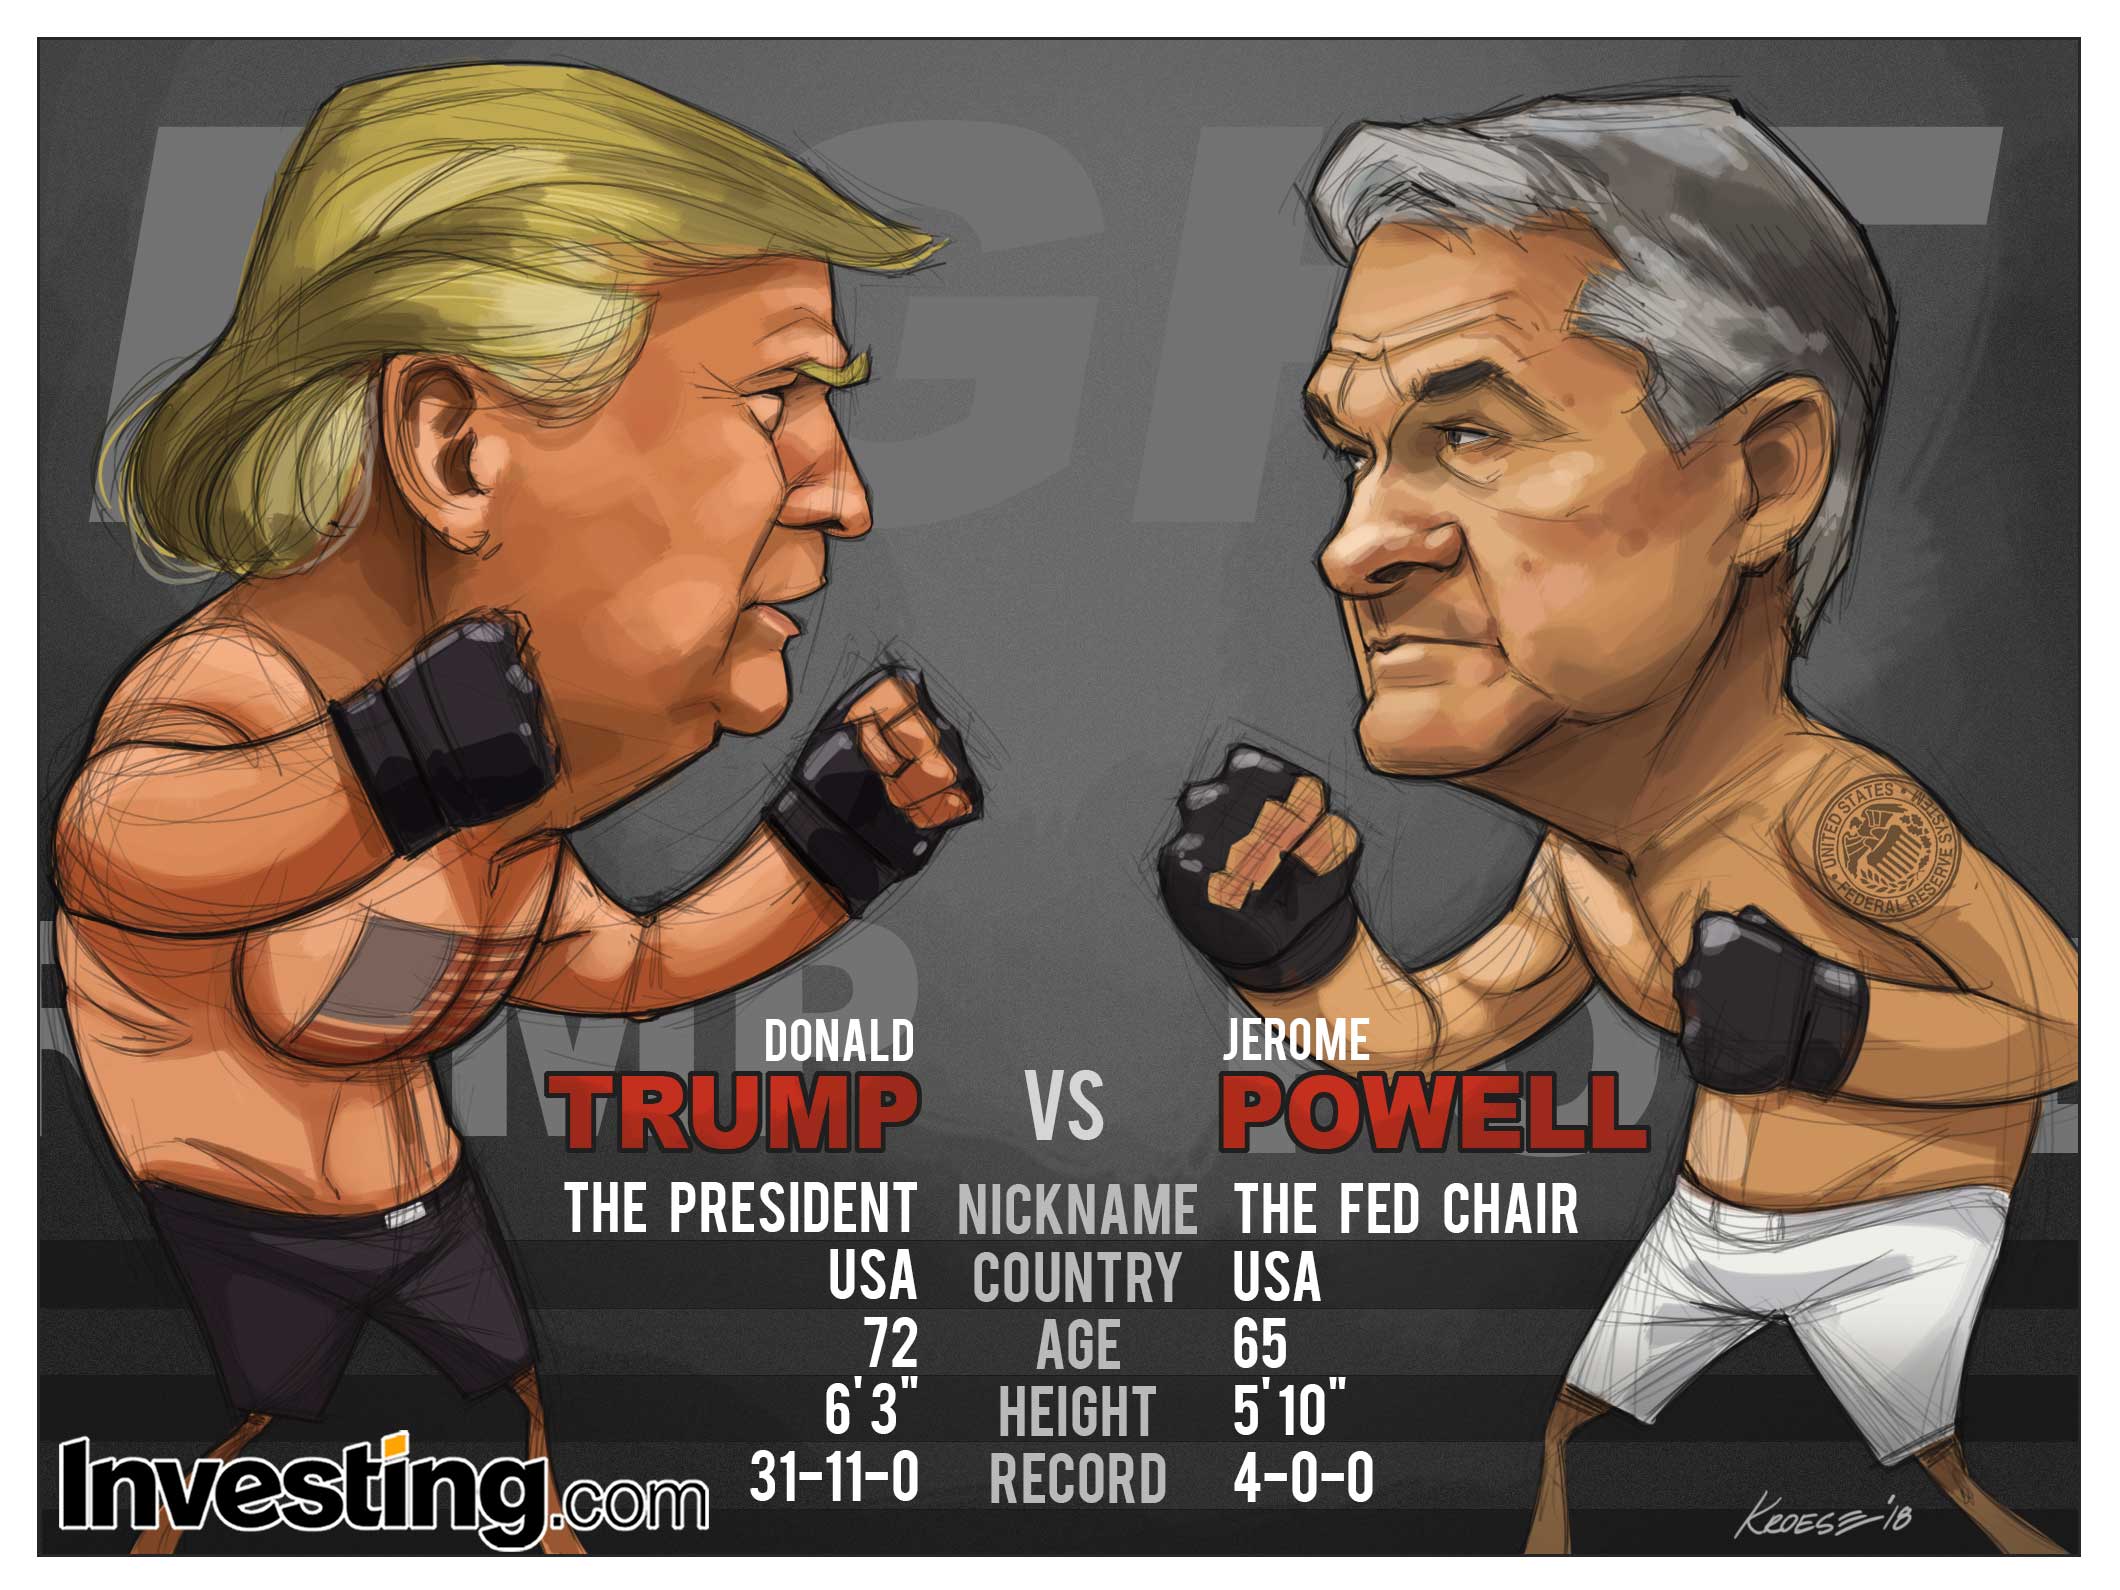 Ostateczna rozgrywka Trump vs Powell to główne wydarzenie tego tygodnia.